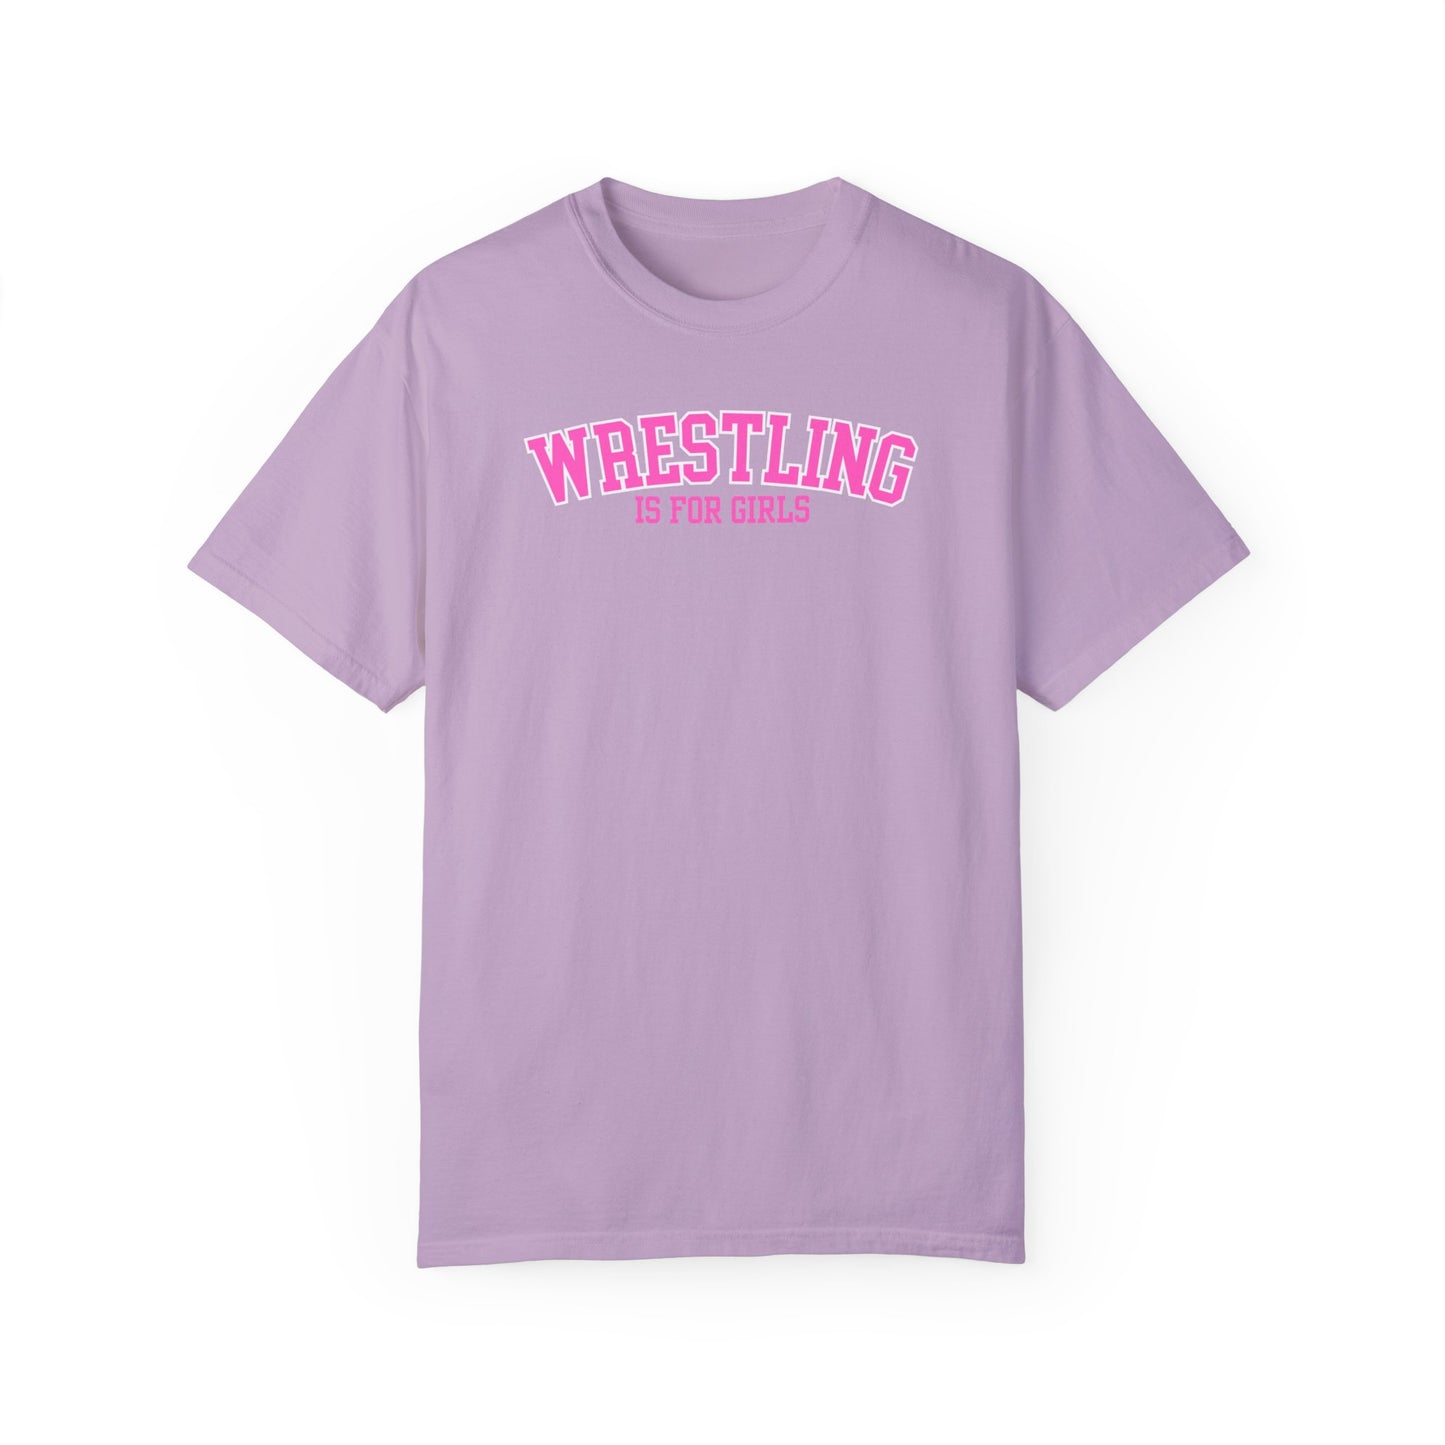 Wrestling is for Girls T-Shirt Girls in Sports Gifts for Girls Wrestling Mom Shirt Trendy Mom Gift for Her Athlete Shirt Team Sport Girl Power